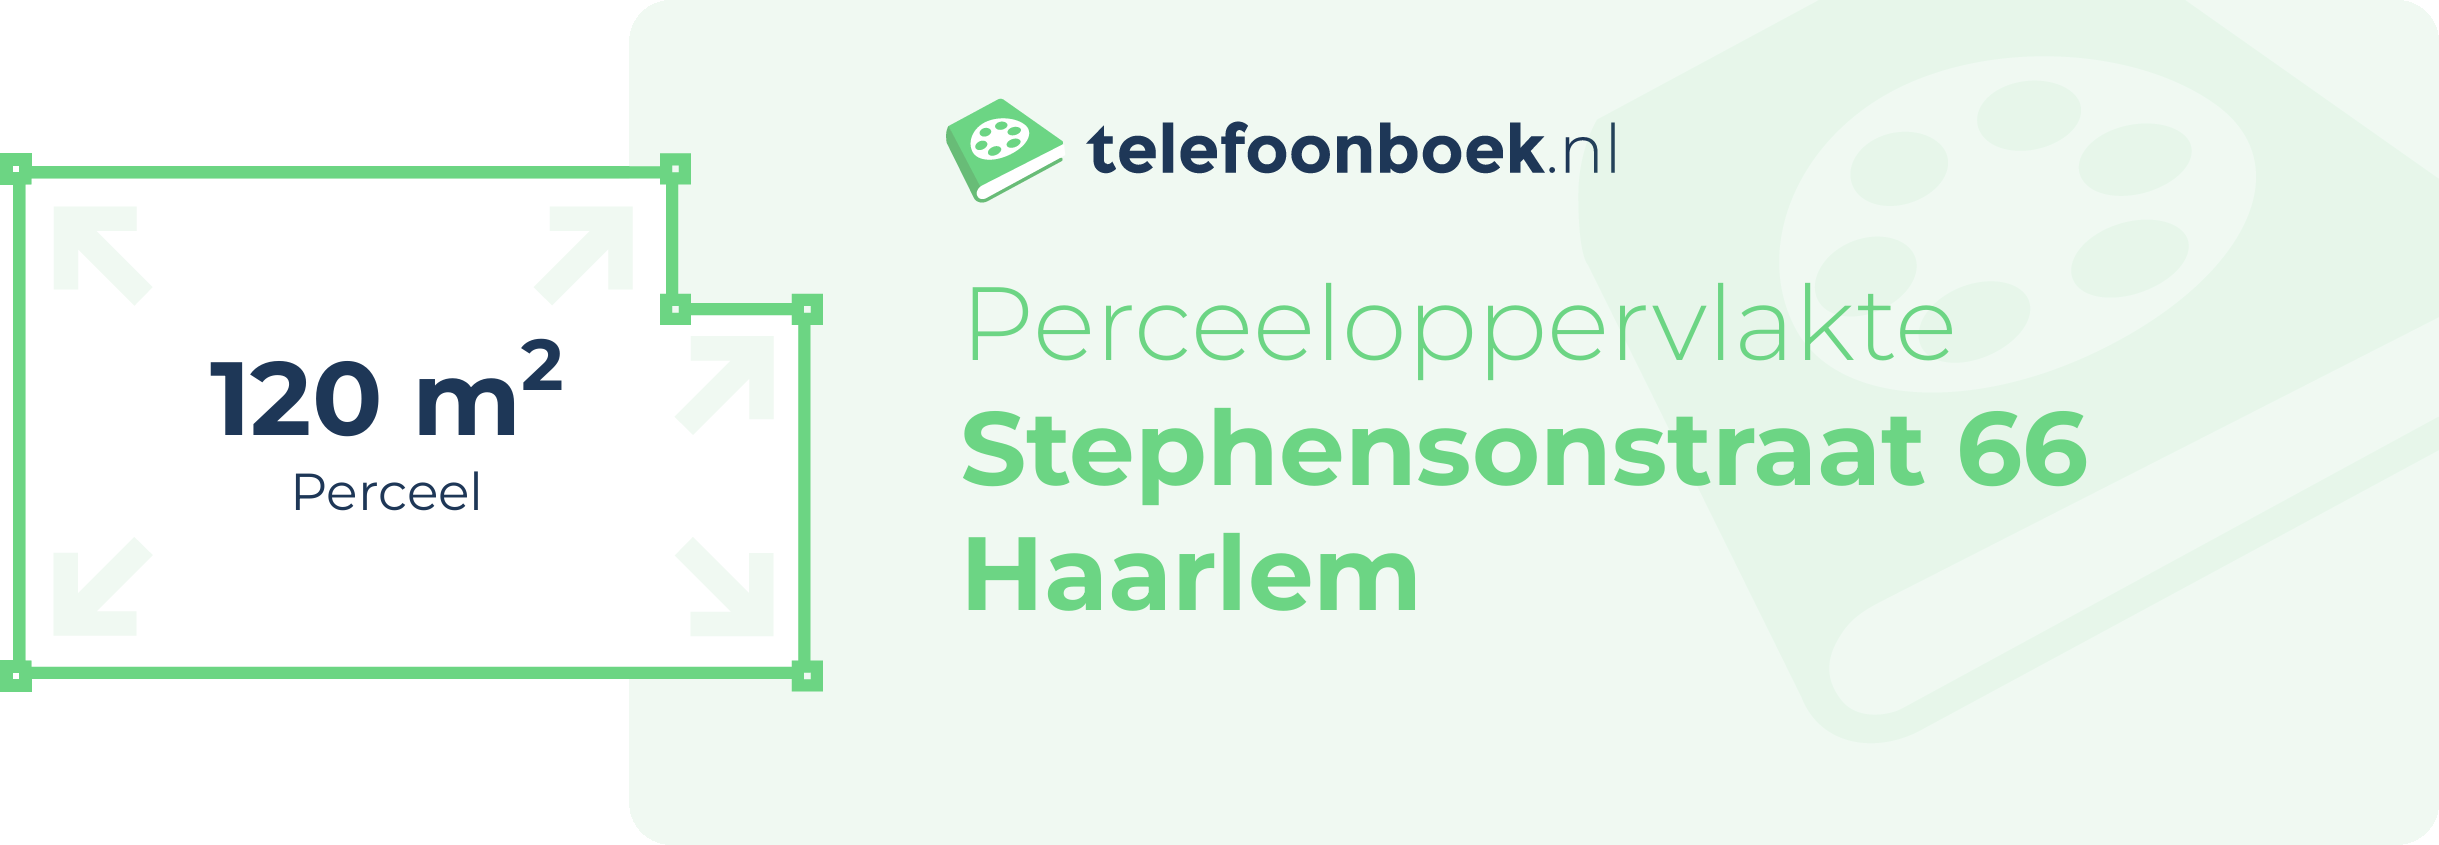 Perceeloppervlakte Stephensonstraat 66 Haarlem